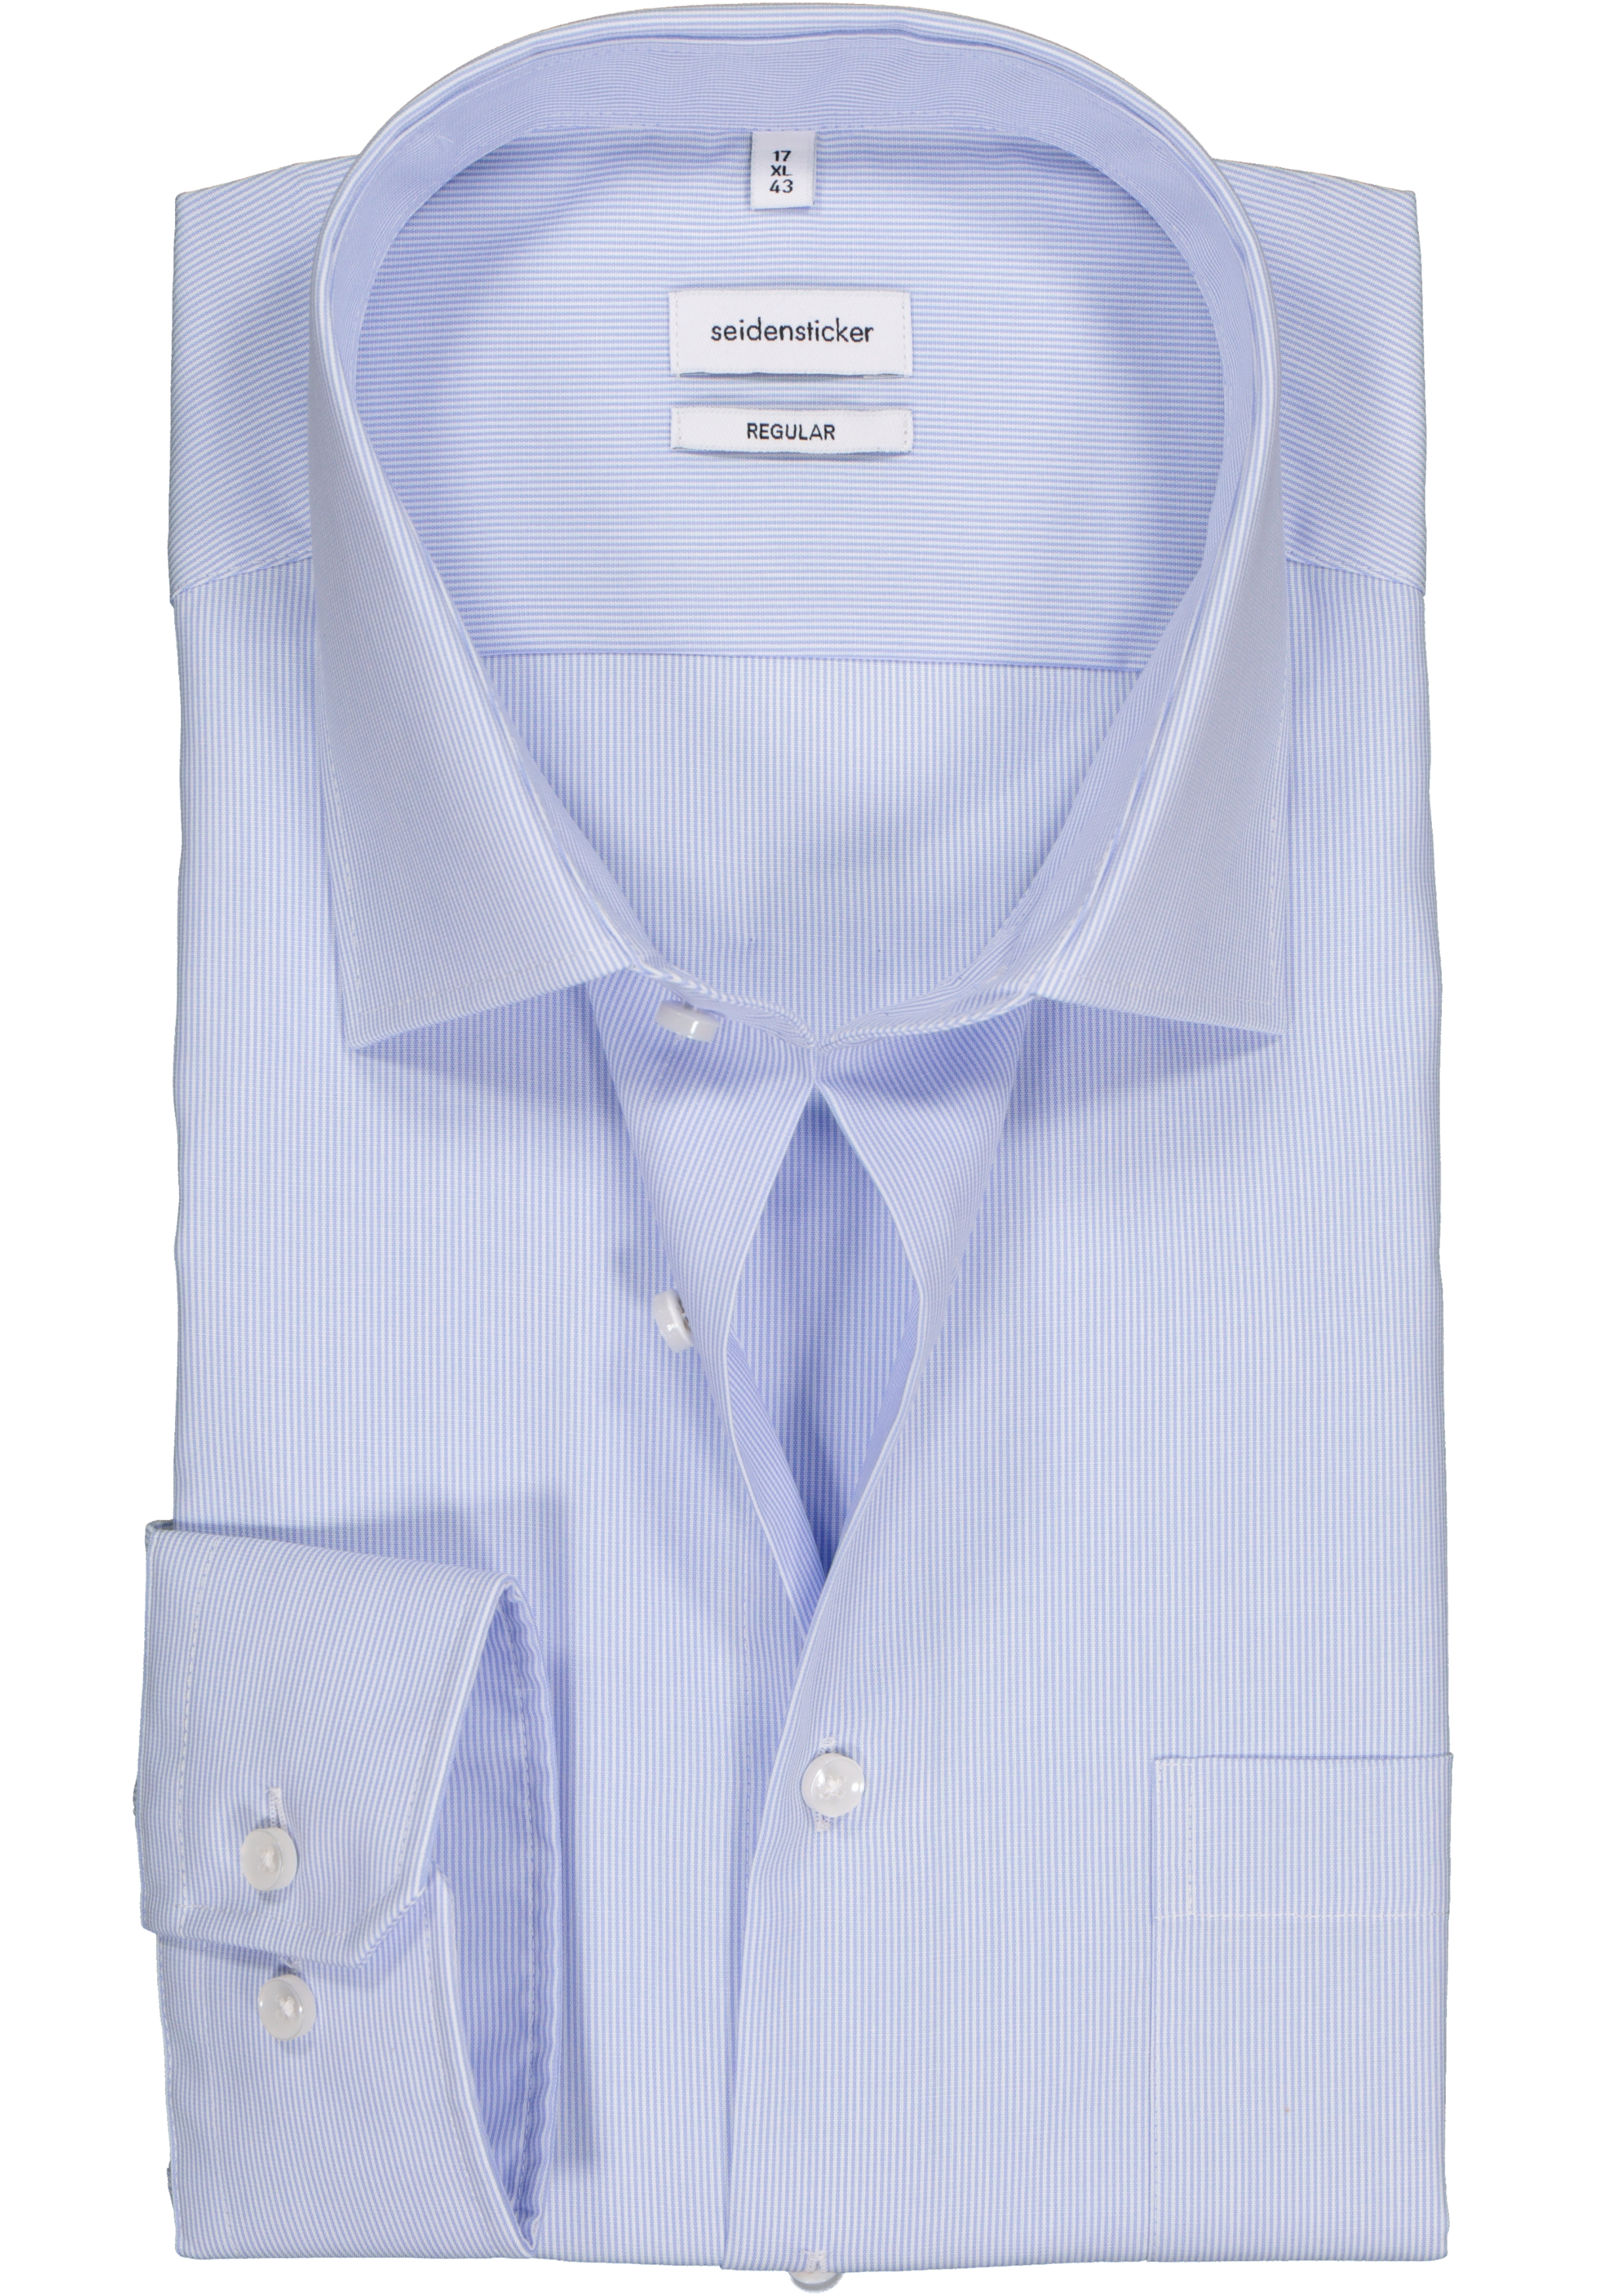 Seidensticker regular fit overhemd, lichtblauw met wit gestreept